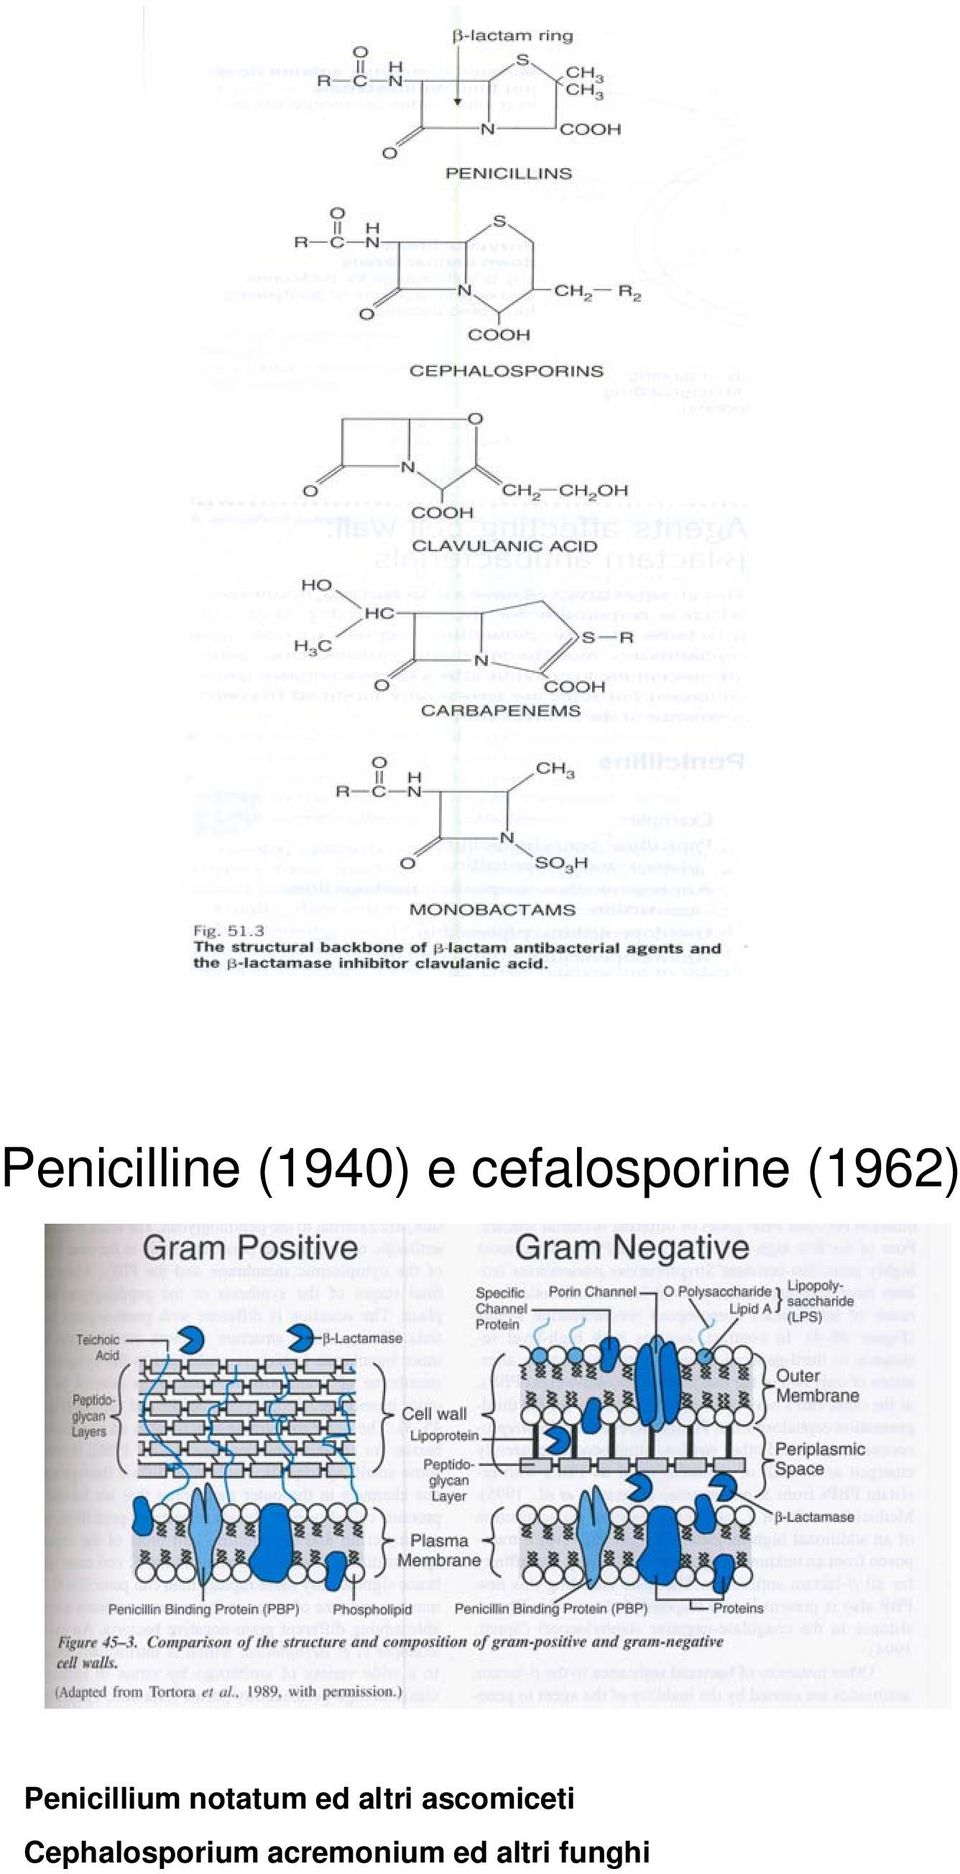 Penicillium notatum ed altri